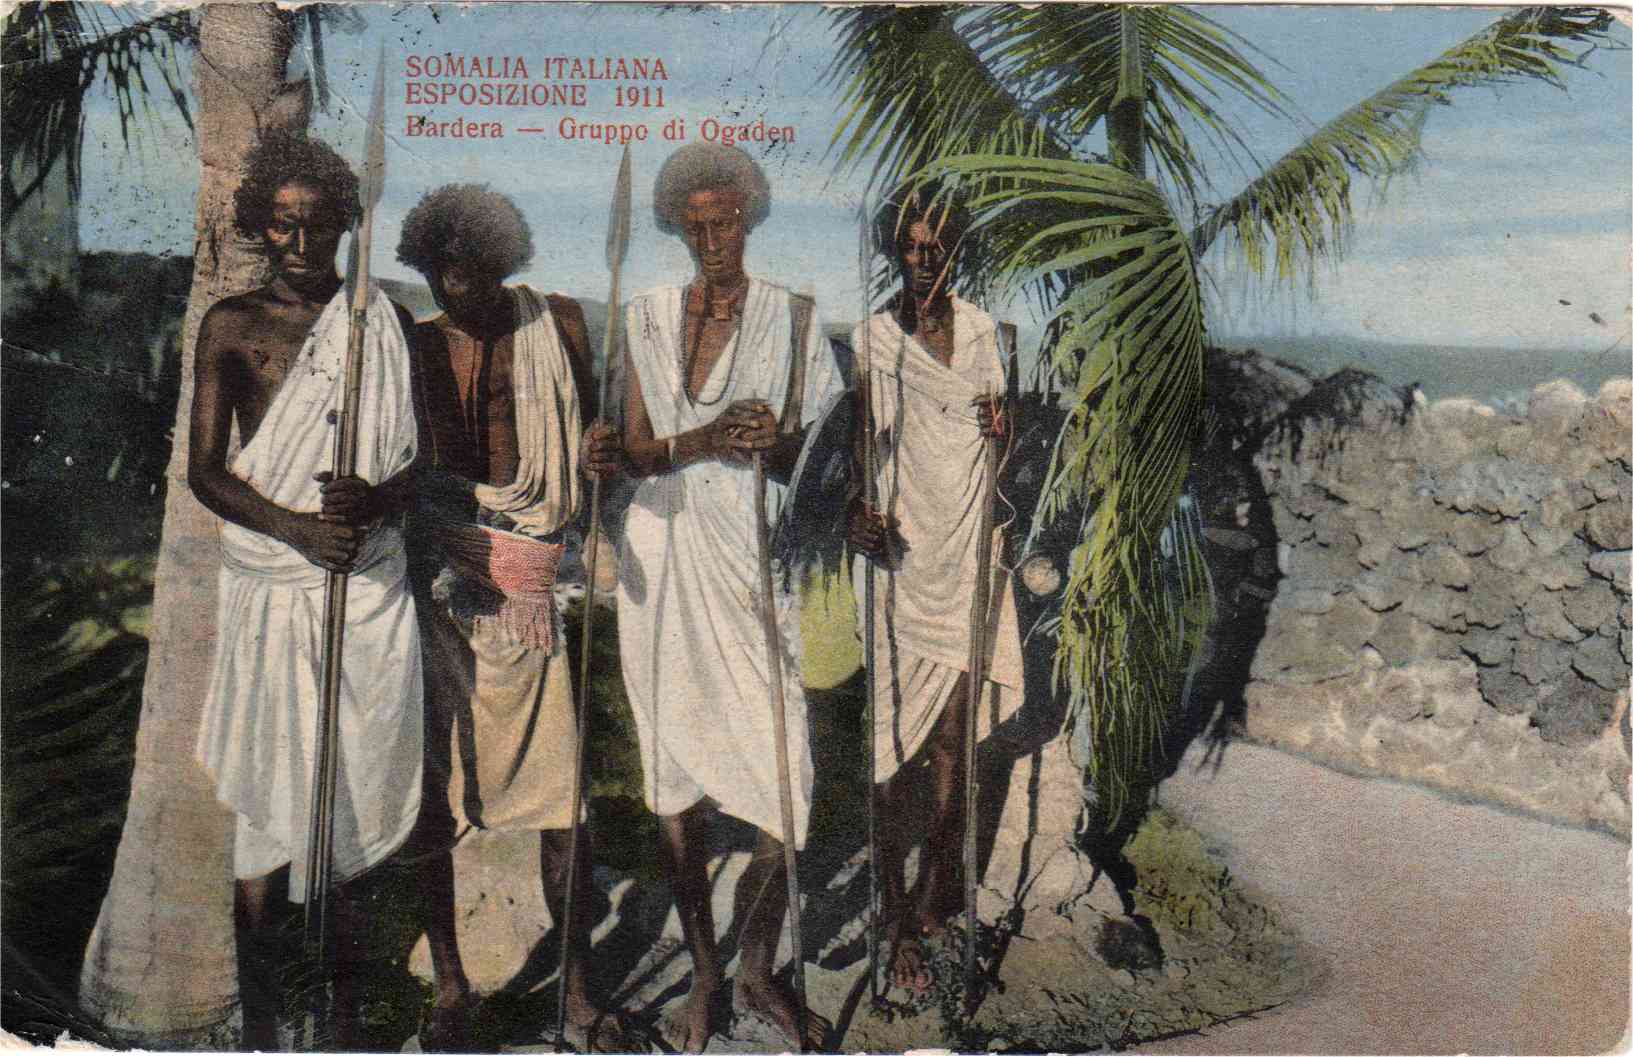 AO-Somalia-1911-gruppo-di-Ogaden.jpg